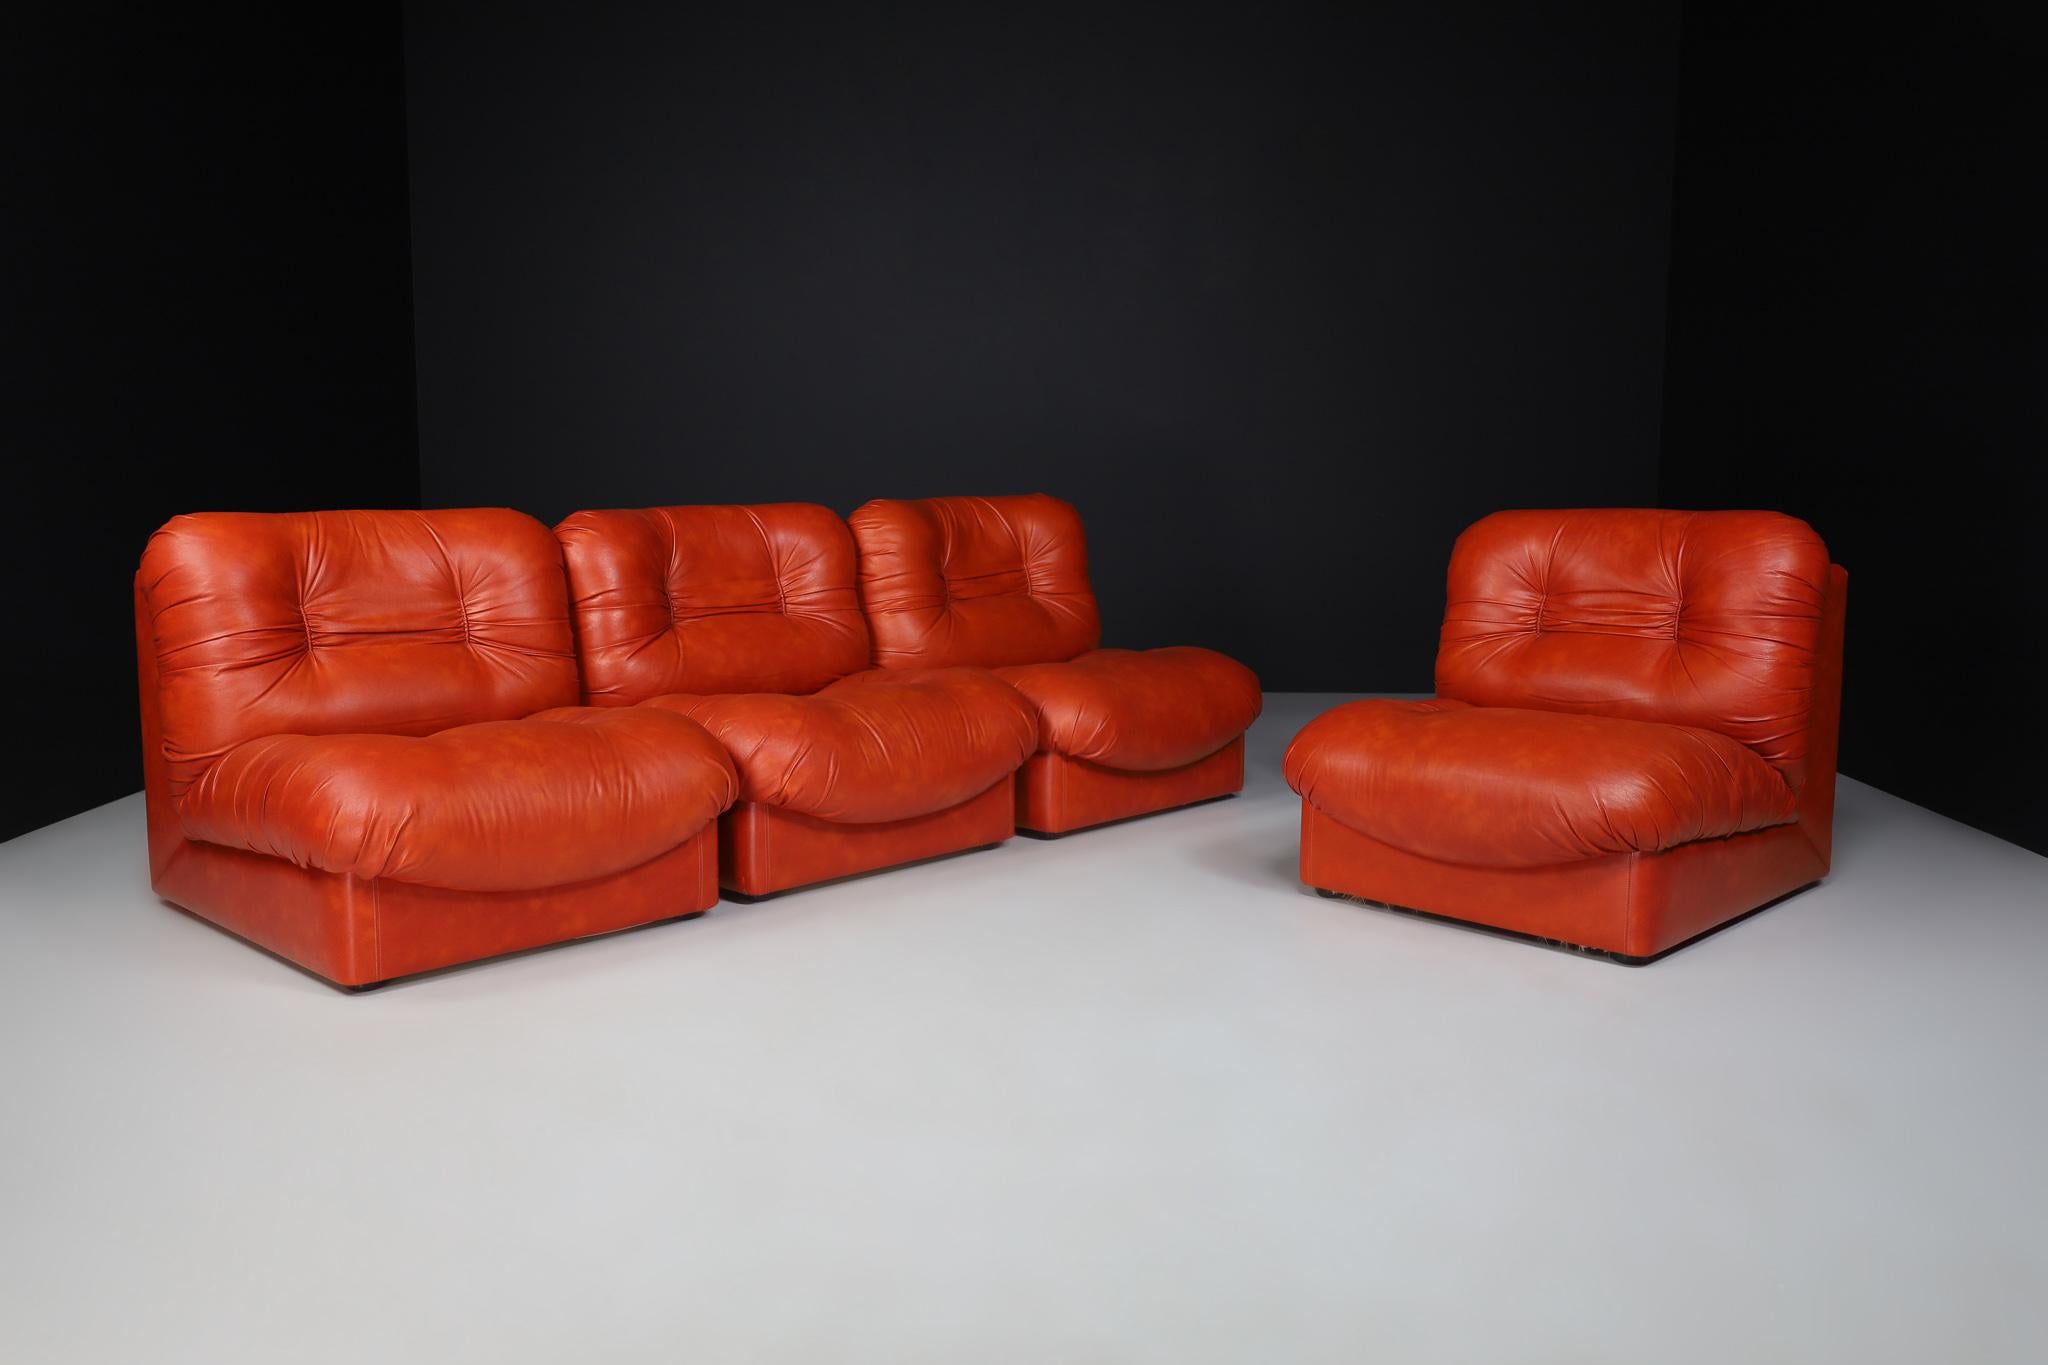 Ensemble de quatre fauteuils/sofa de salon en cuir rouge, Italie 1970

Ce design se caractérise par une forme en L reposant sur deux coussins touffetés reliés entre eux. Cela donne à la chaise un aspect volumineux et ludique. Nous avons